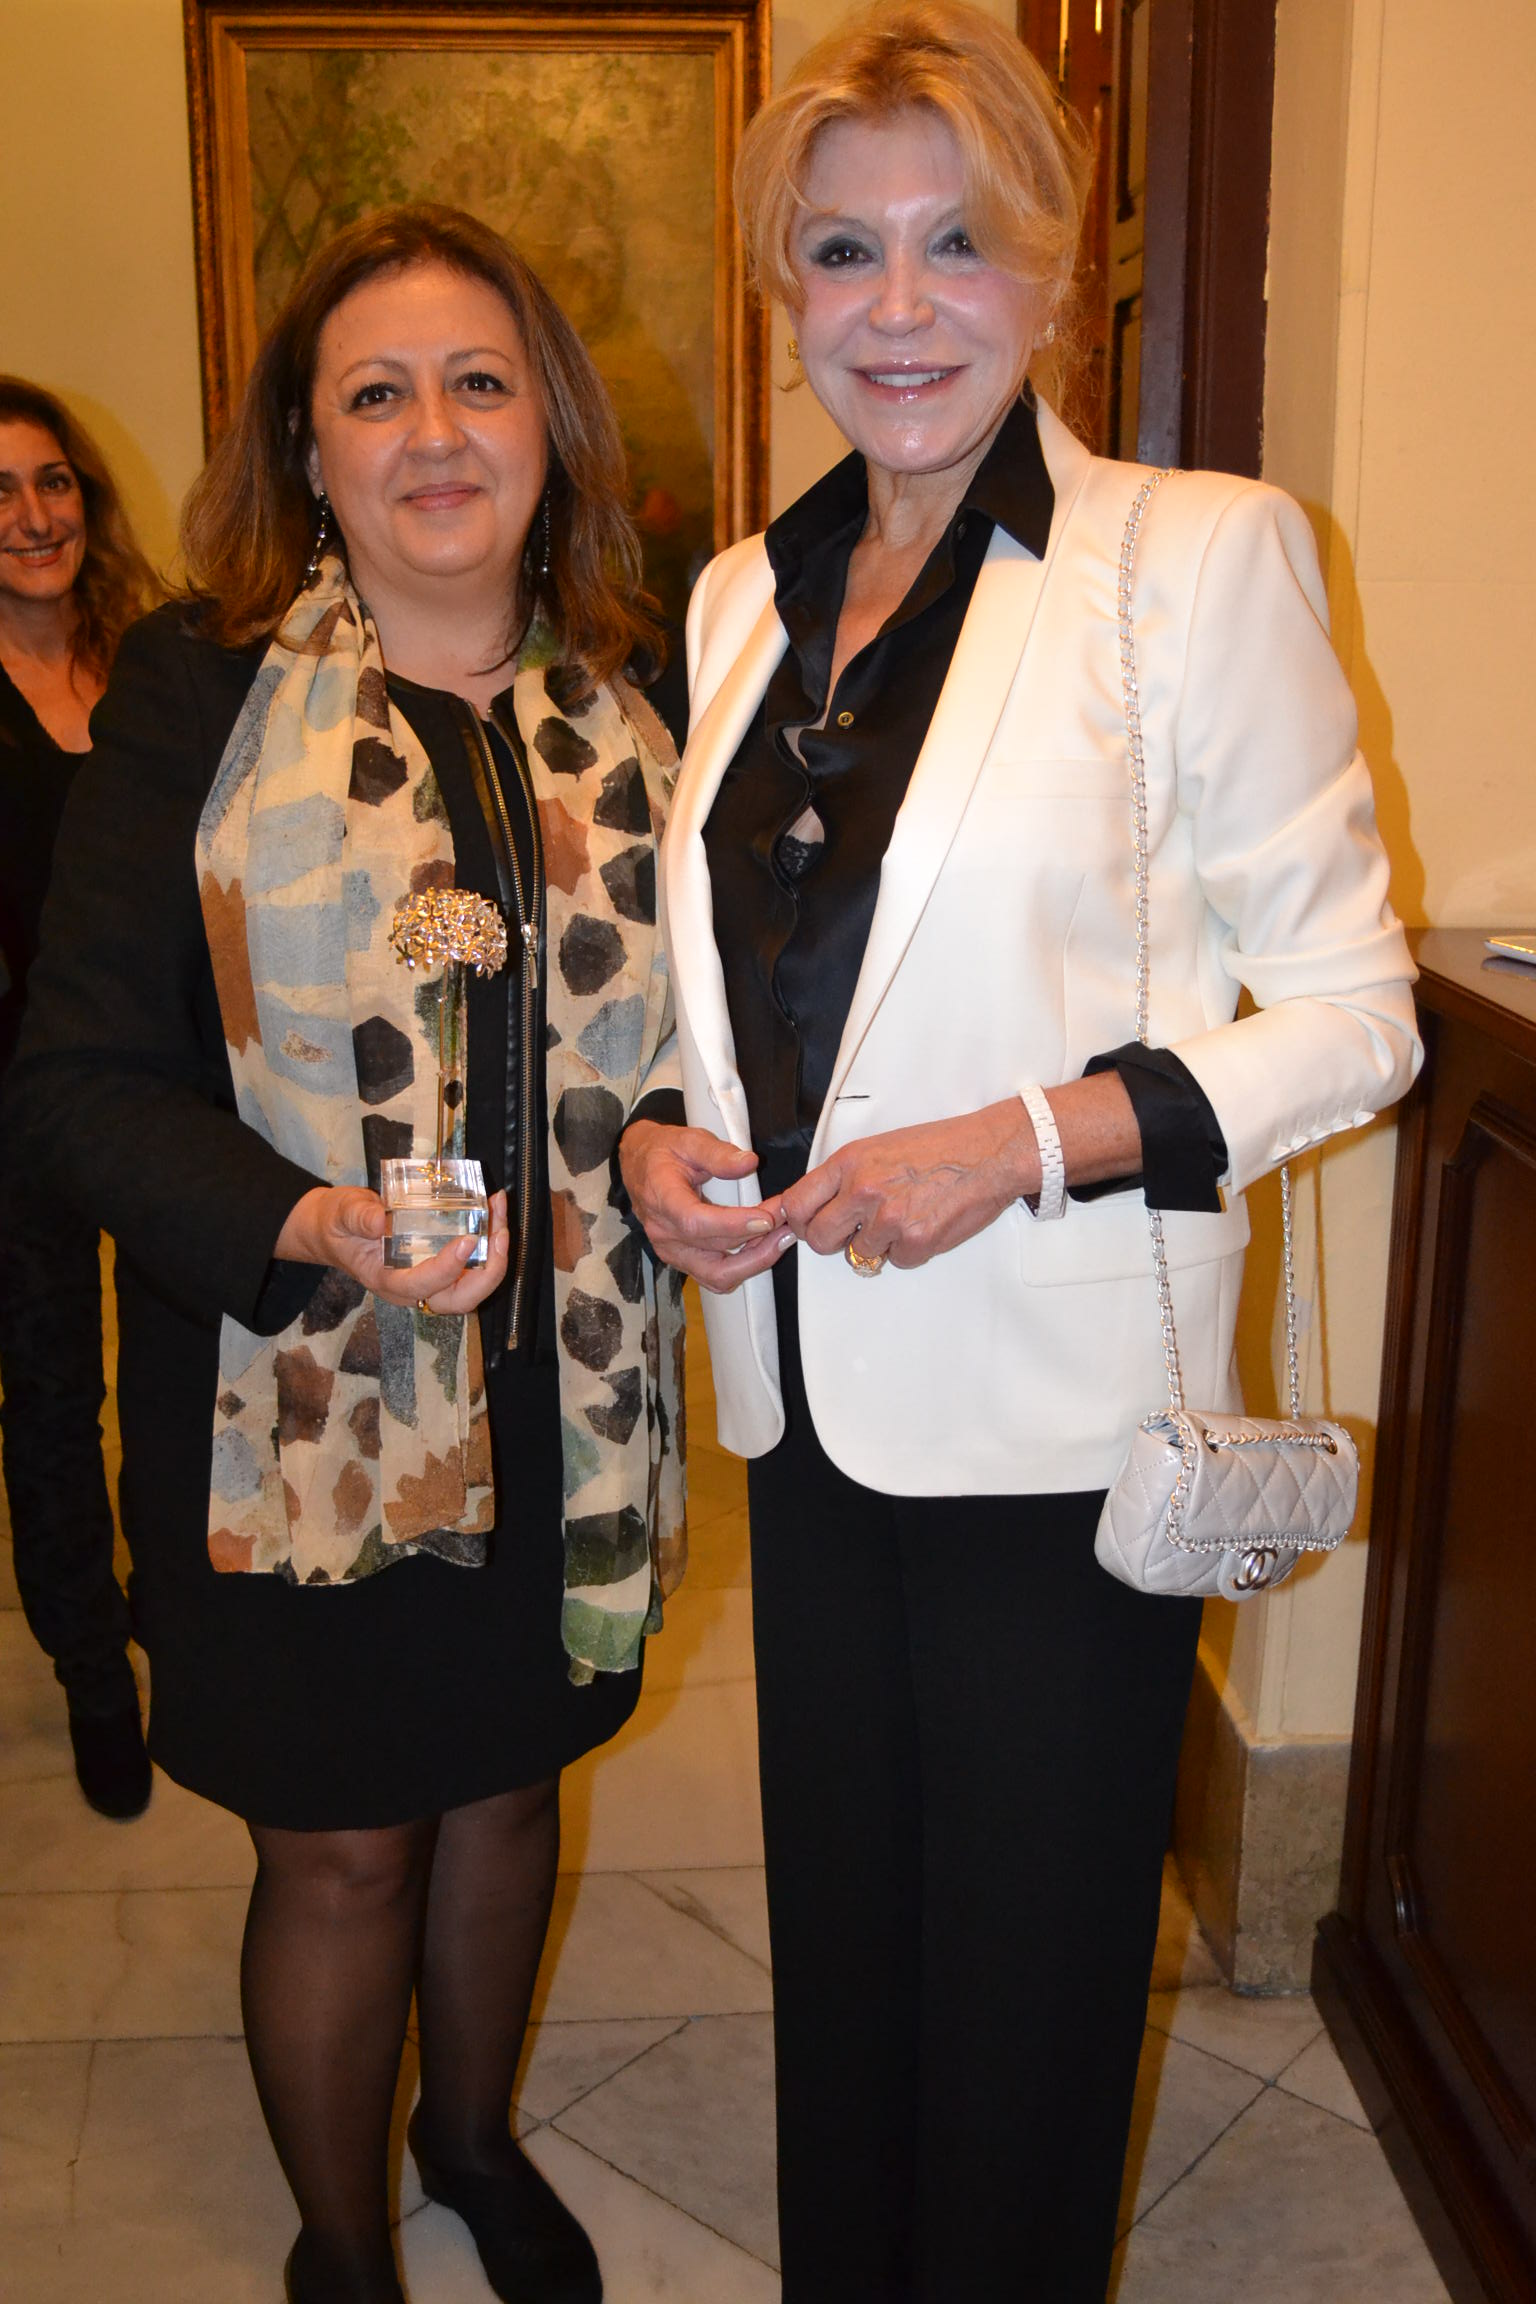 La directora de la Alhambra, premiada por la Asociación de Ejecutivos y directivos españoles